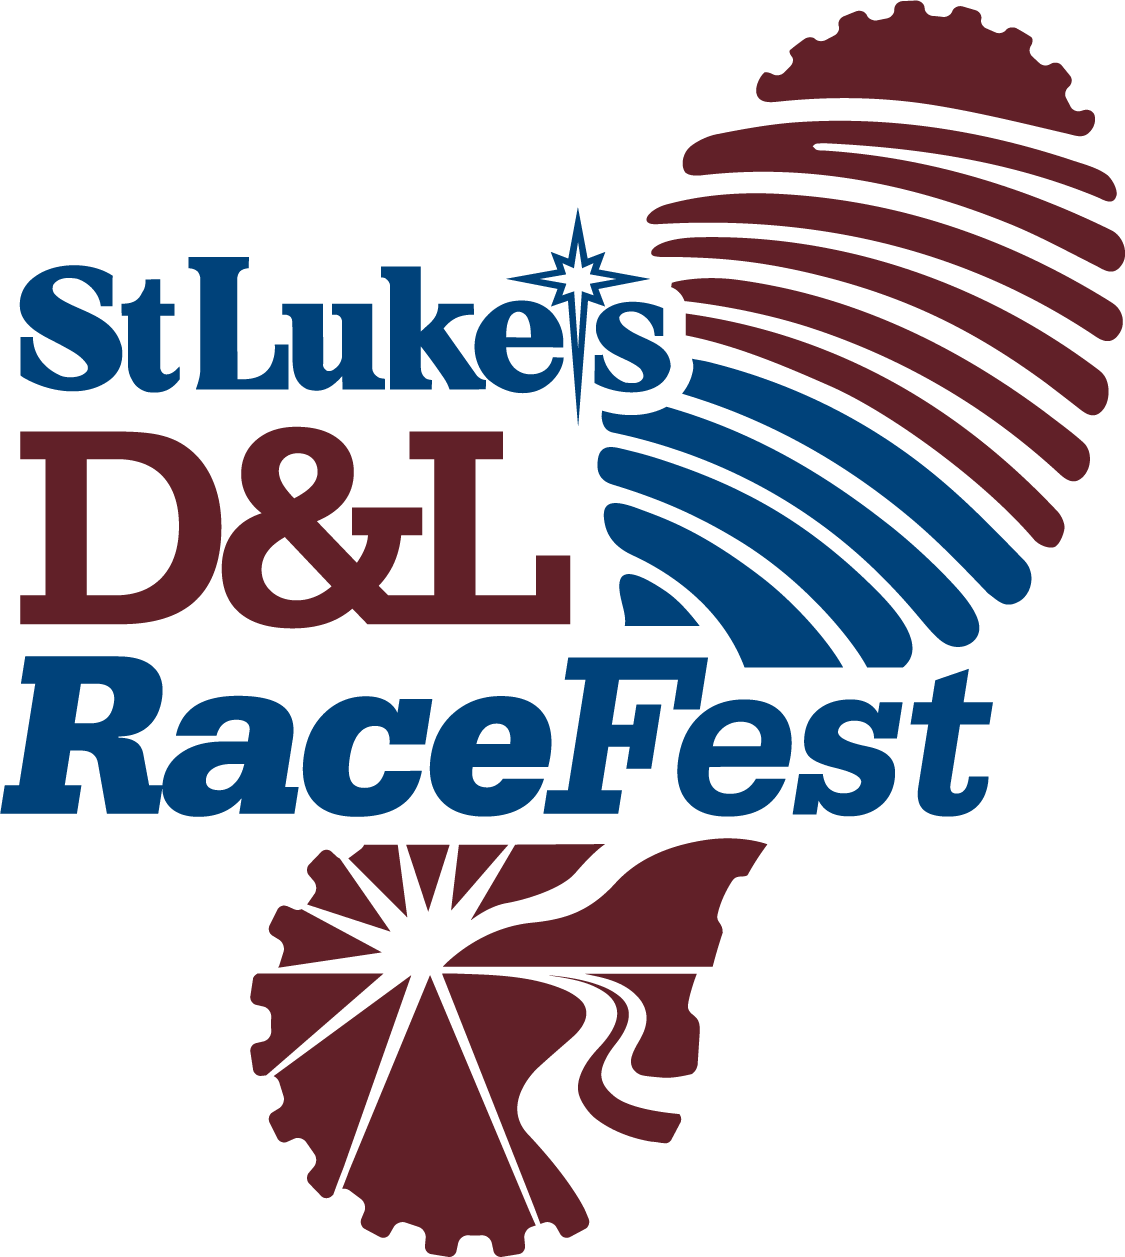 St. Luke’s D&L RaceFest logo on RaceRaves